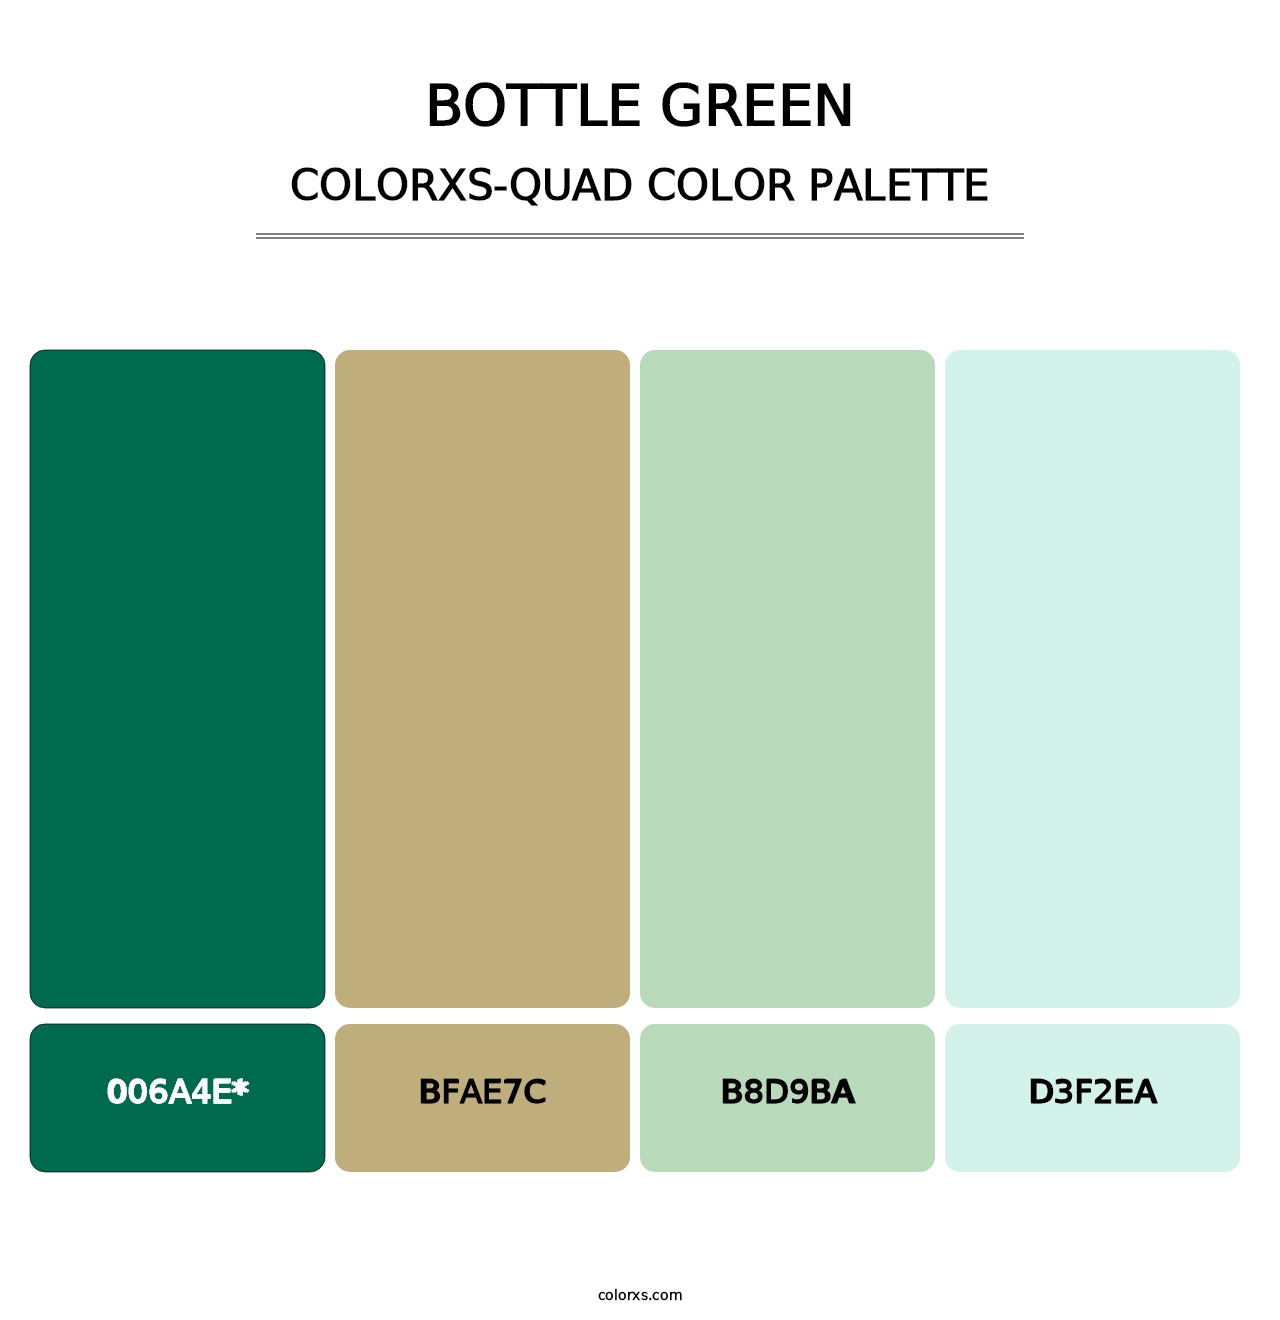 Bottle Green - Colorxs Quad Palette